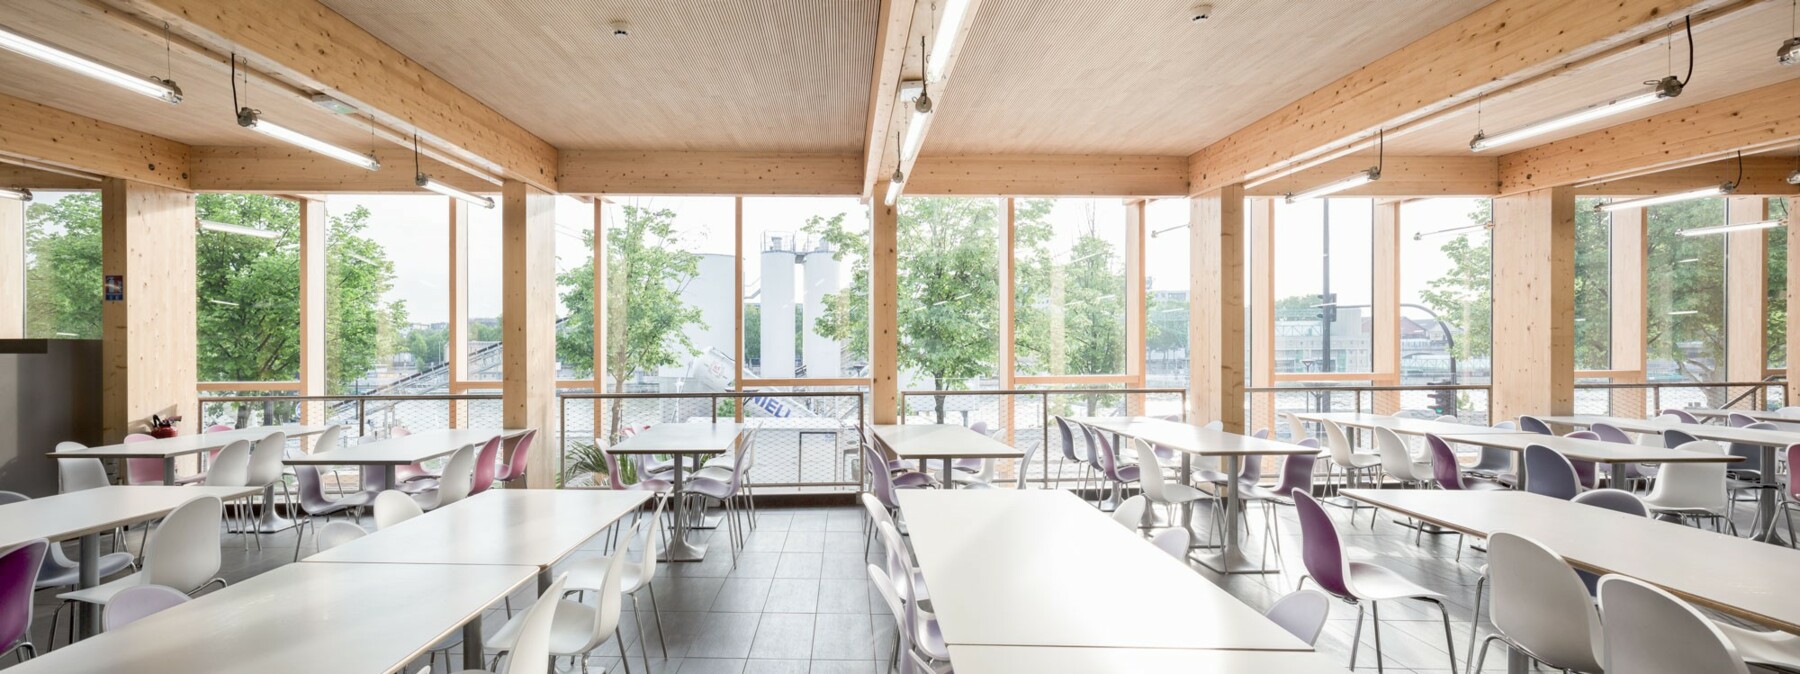 Die Materialien aus Glas, Metall und Holz von Lignotrend schaffen eine helle, freundliche Atmosphäre in dieser Cafeteria mit Blick auf die Seine. 